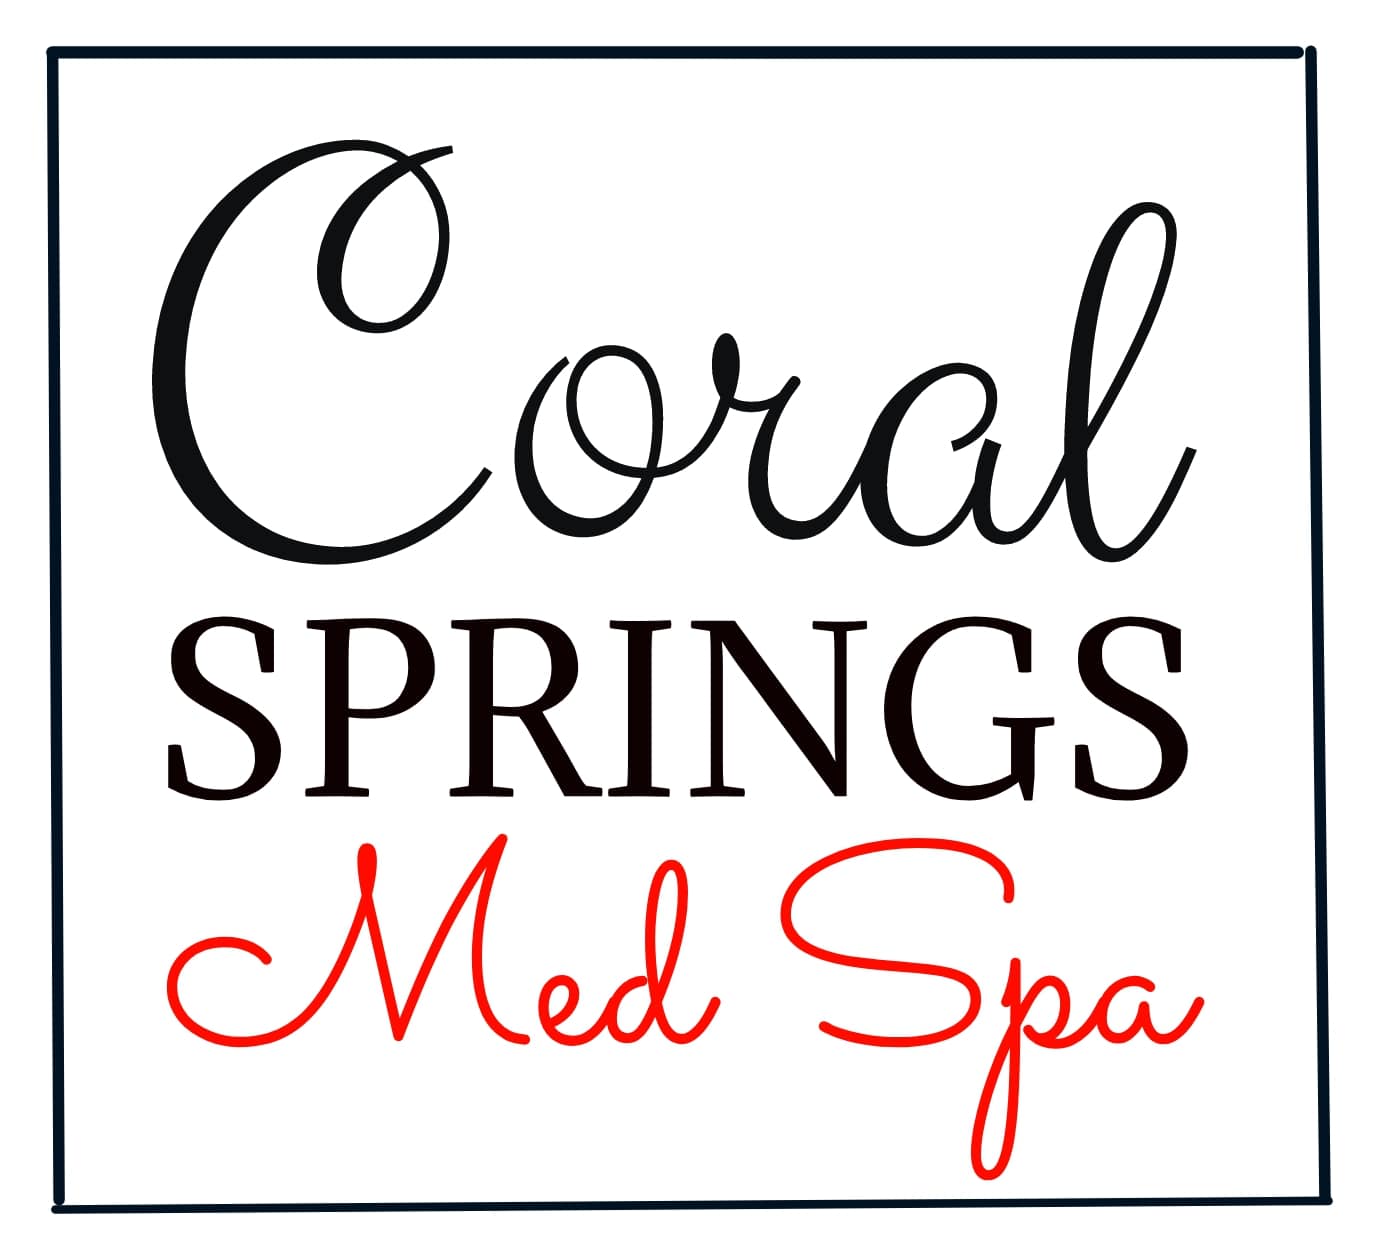 Coral Springs Med Spa Logo